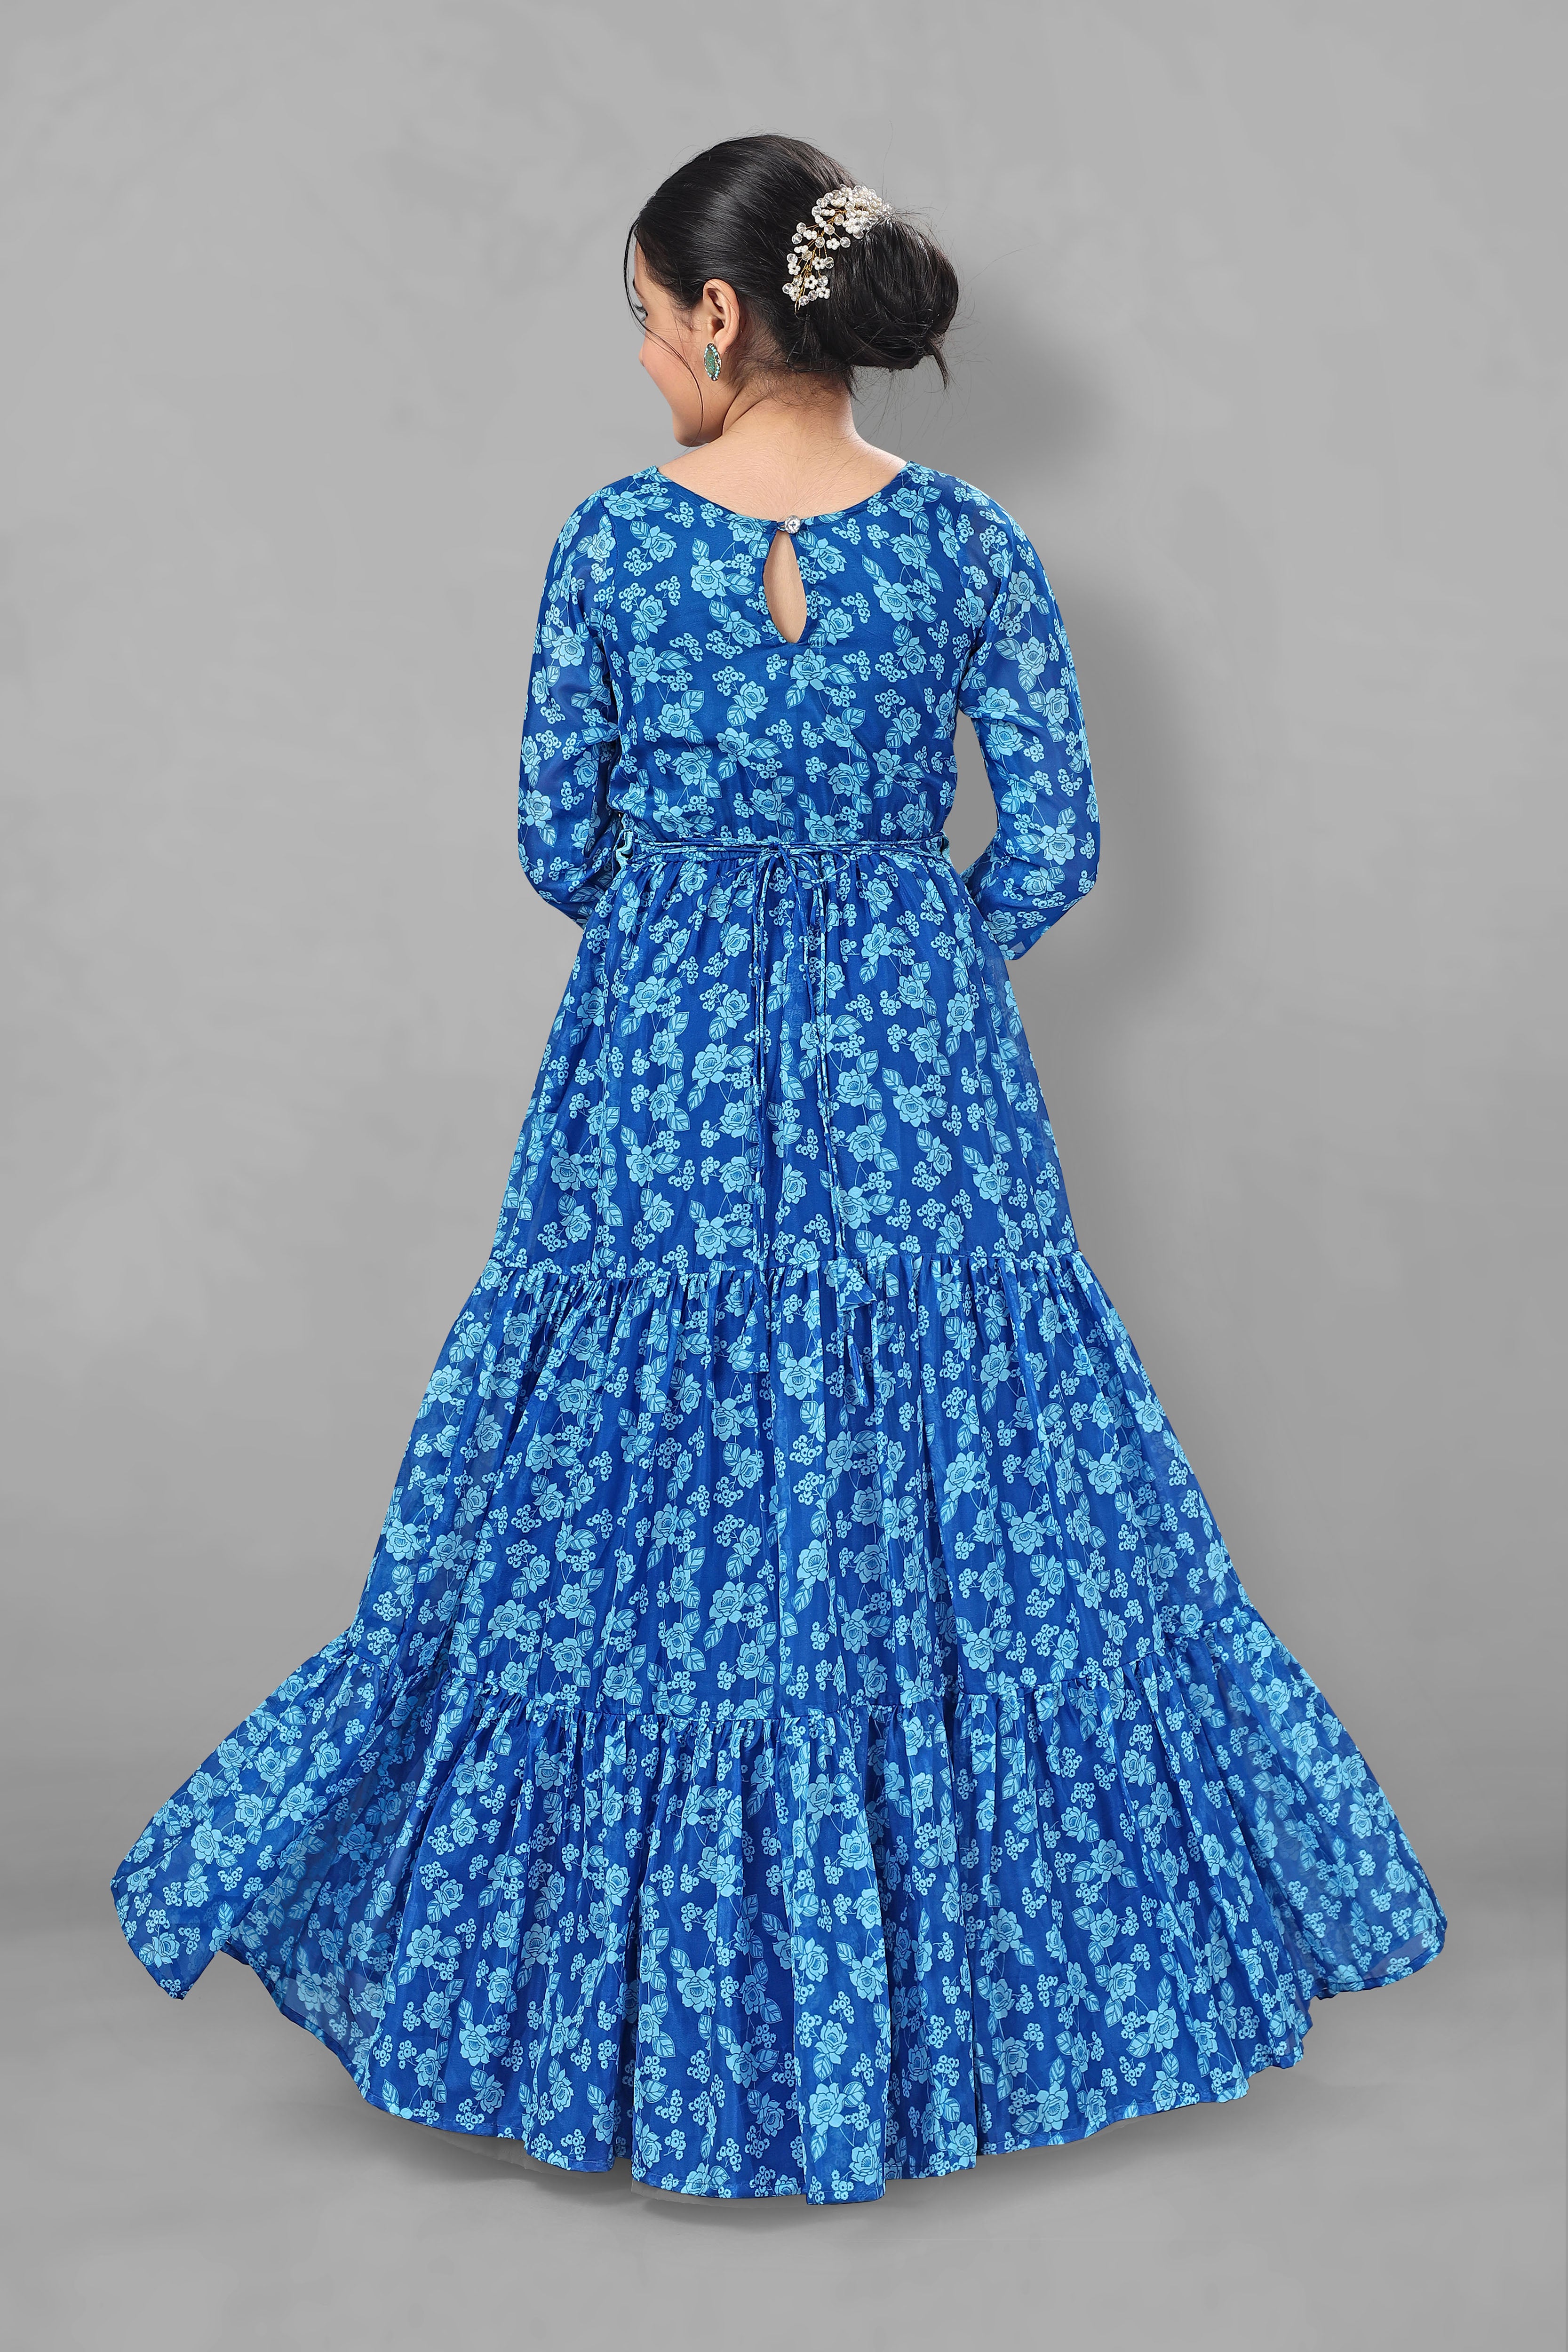 Smart and elegant formal dress for little girls in oceanic blue hue